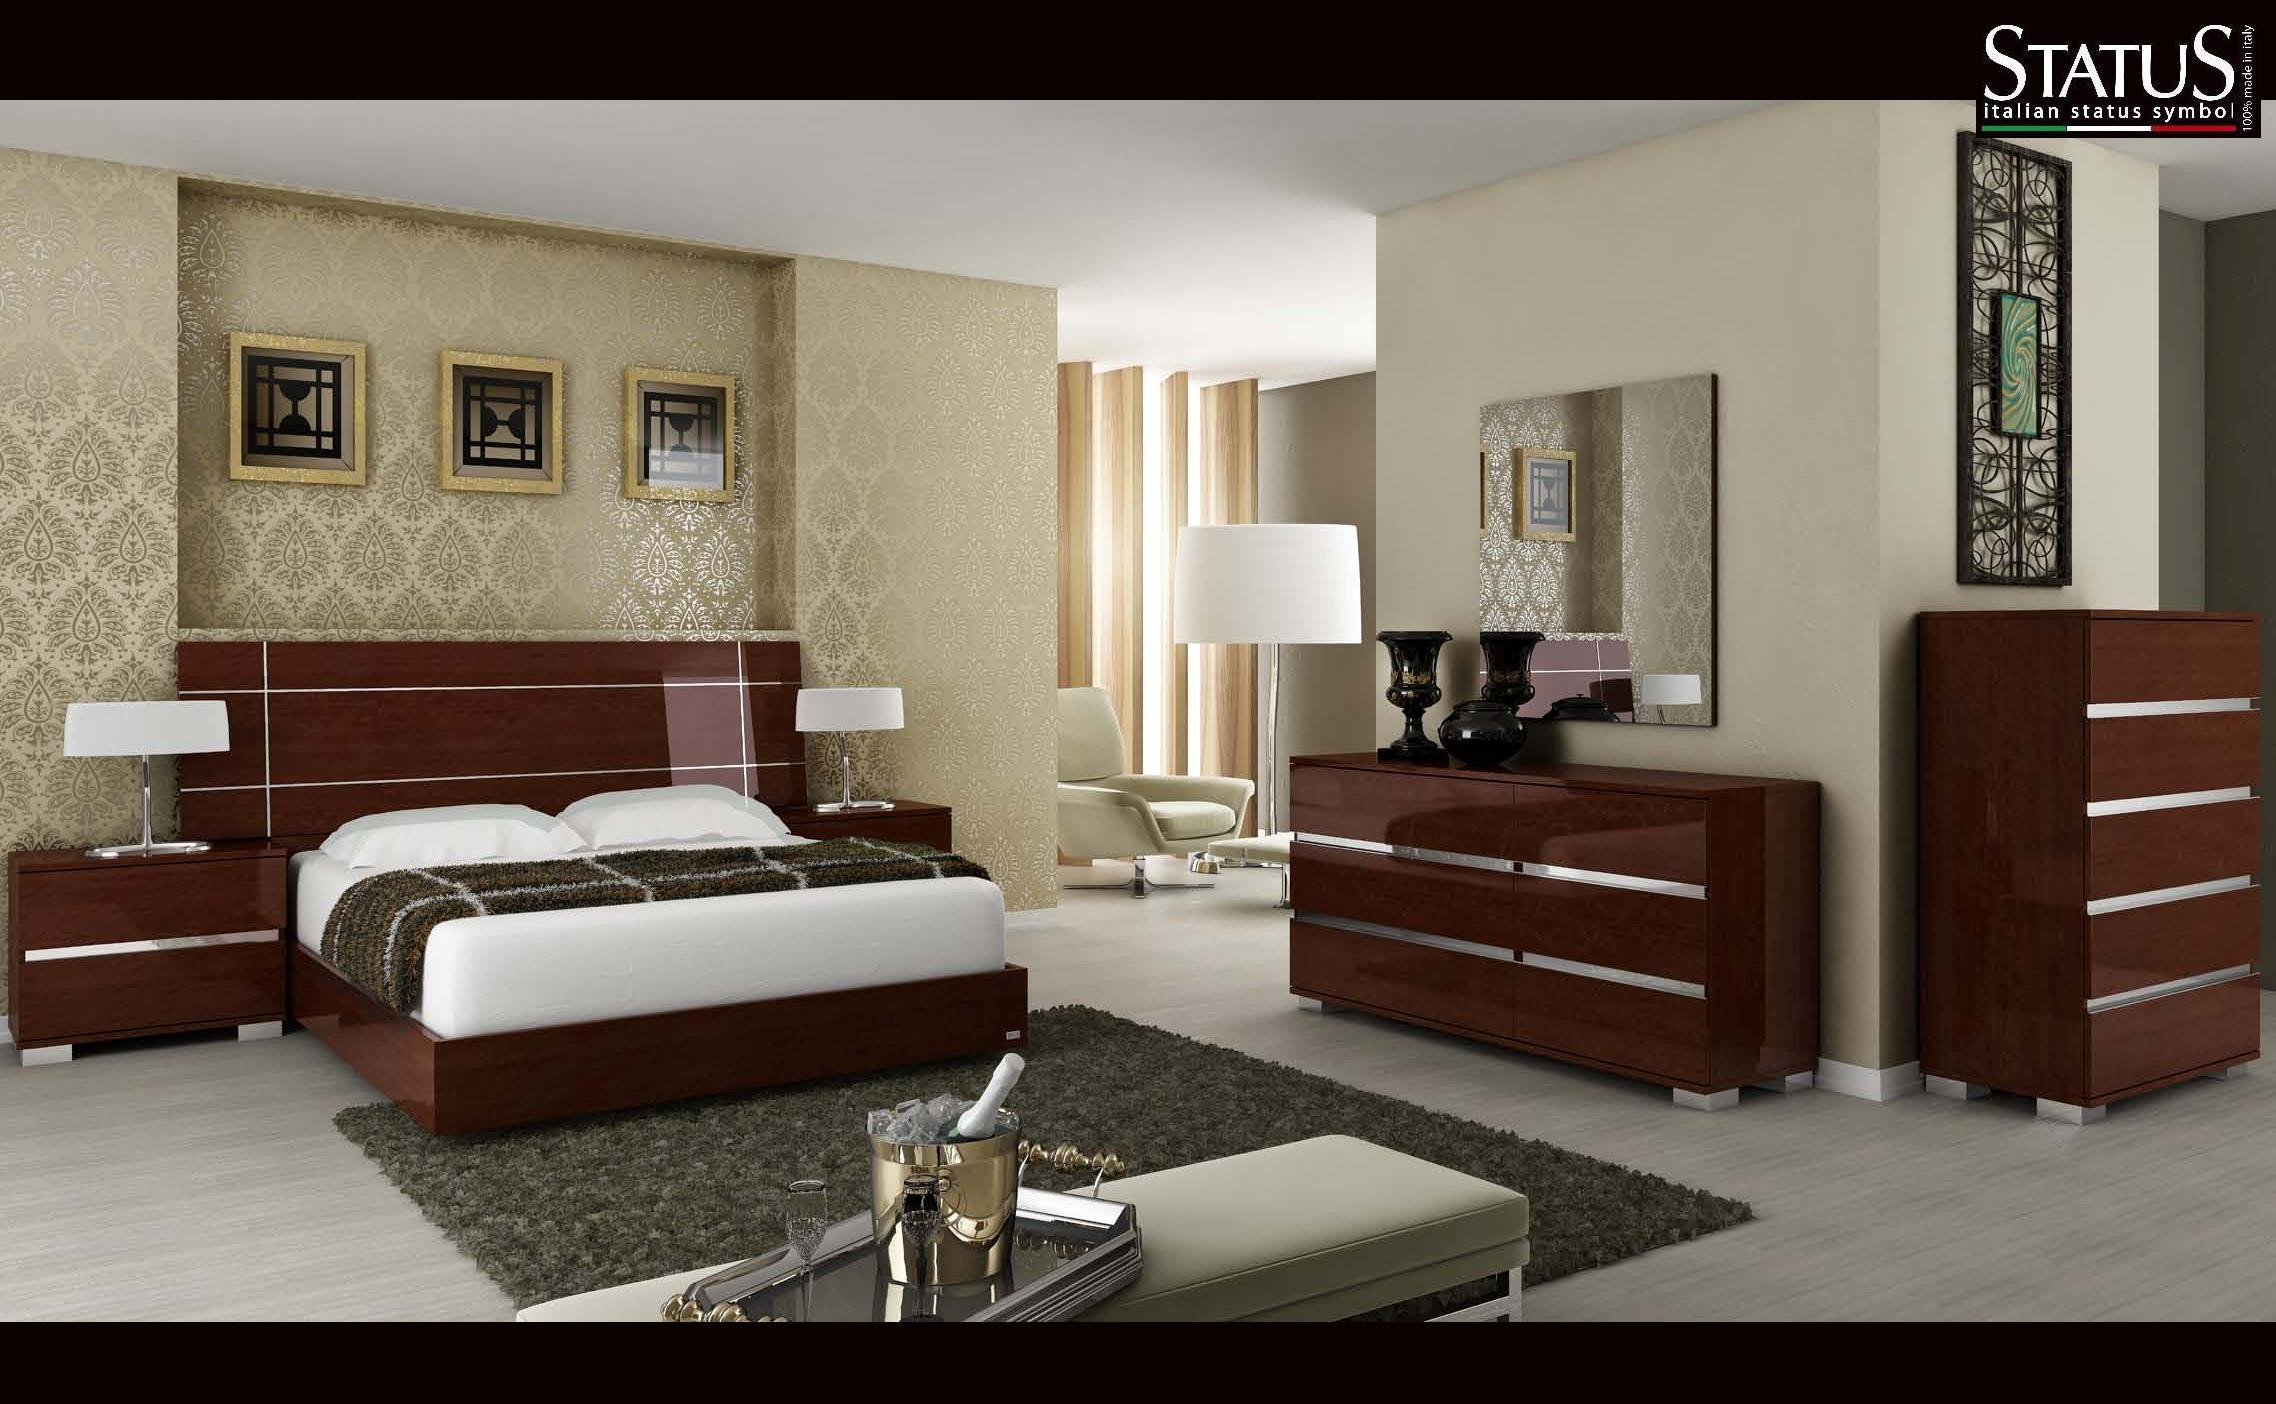 Modern King Size Bedroom Sets
 DREAM KING SIZE MODERN DESIGN BEDROOM SET WALNUT 5 pc